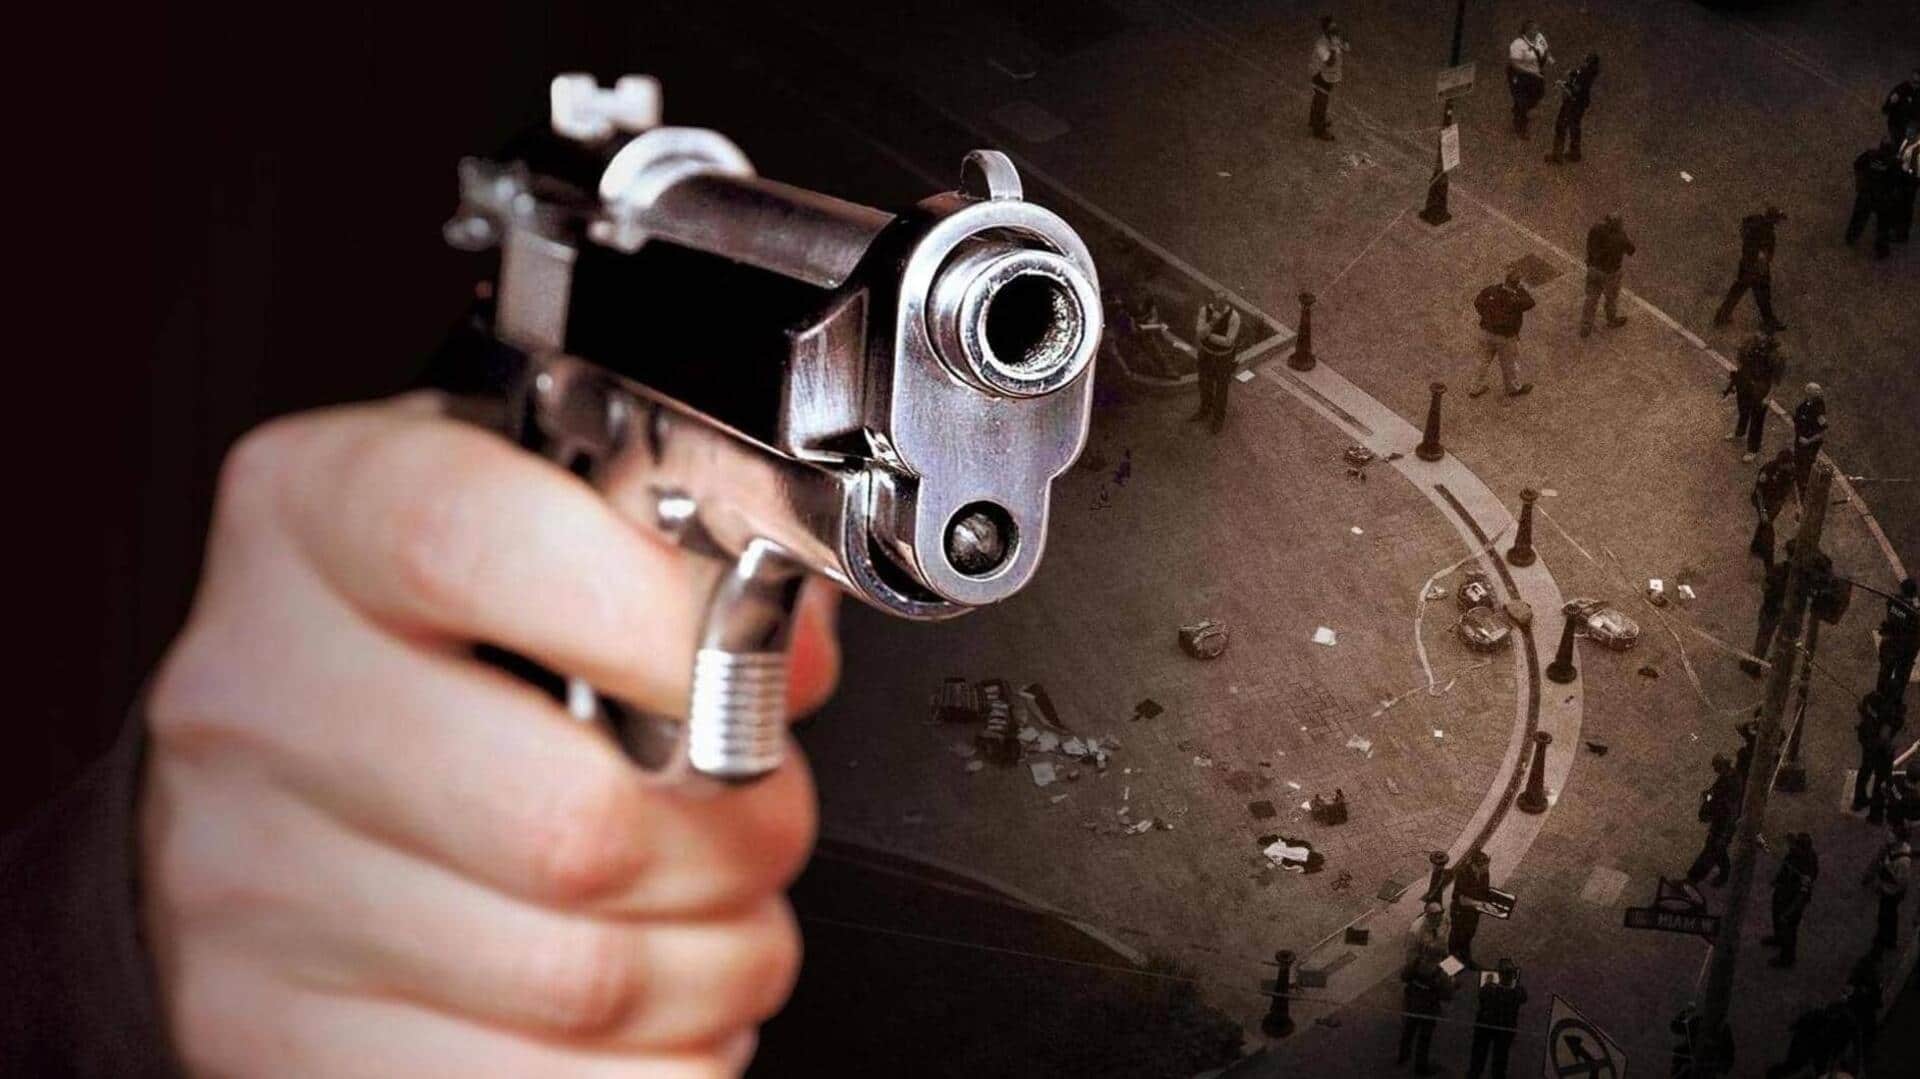 दिल्ली: नंदनगरी इलाके में दिनदहाड़े अंधाधुंध गोलीबारी में एक पुलिसकर्मी की मौत, हमलावर ने आत्महत्या की